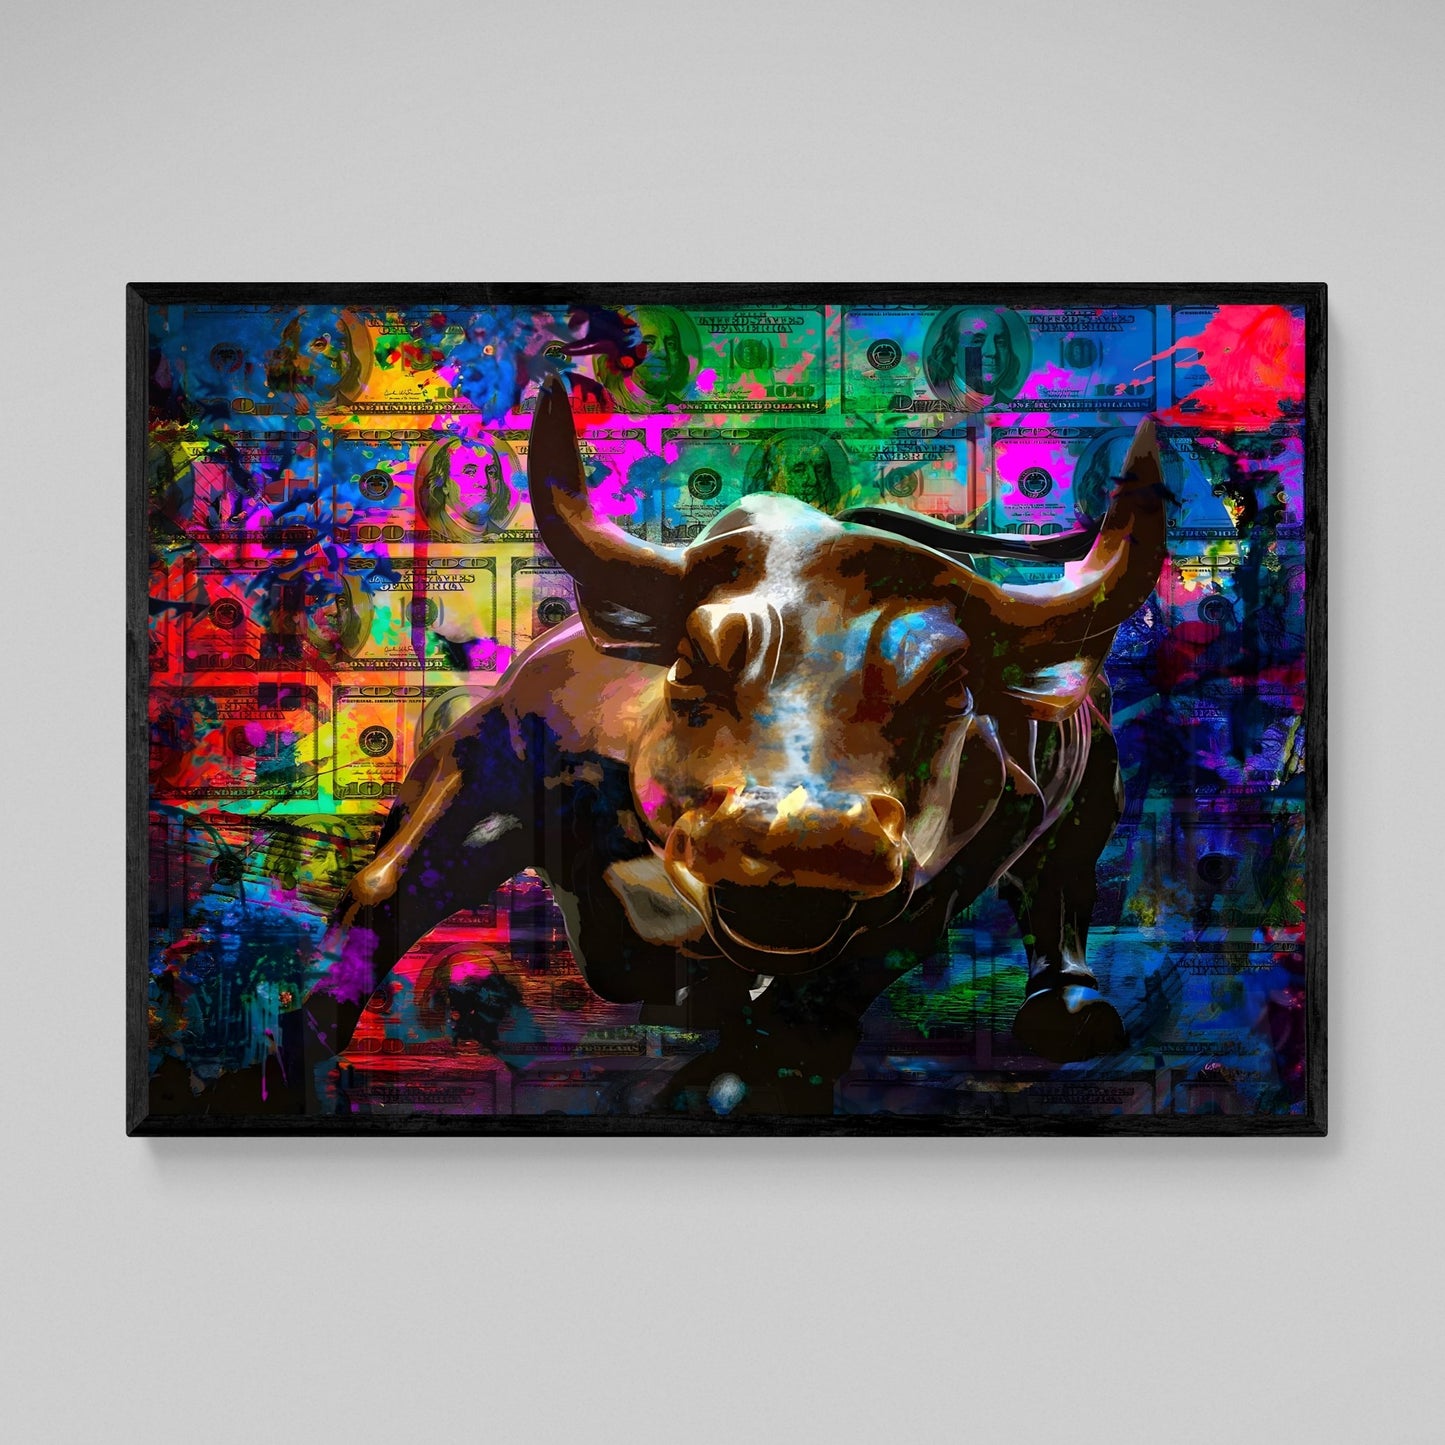 Wall Street Pop Art - Luxury Art Canvas